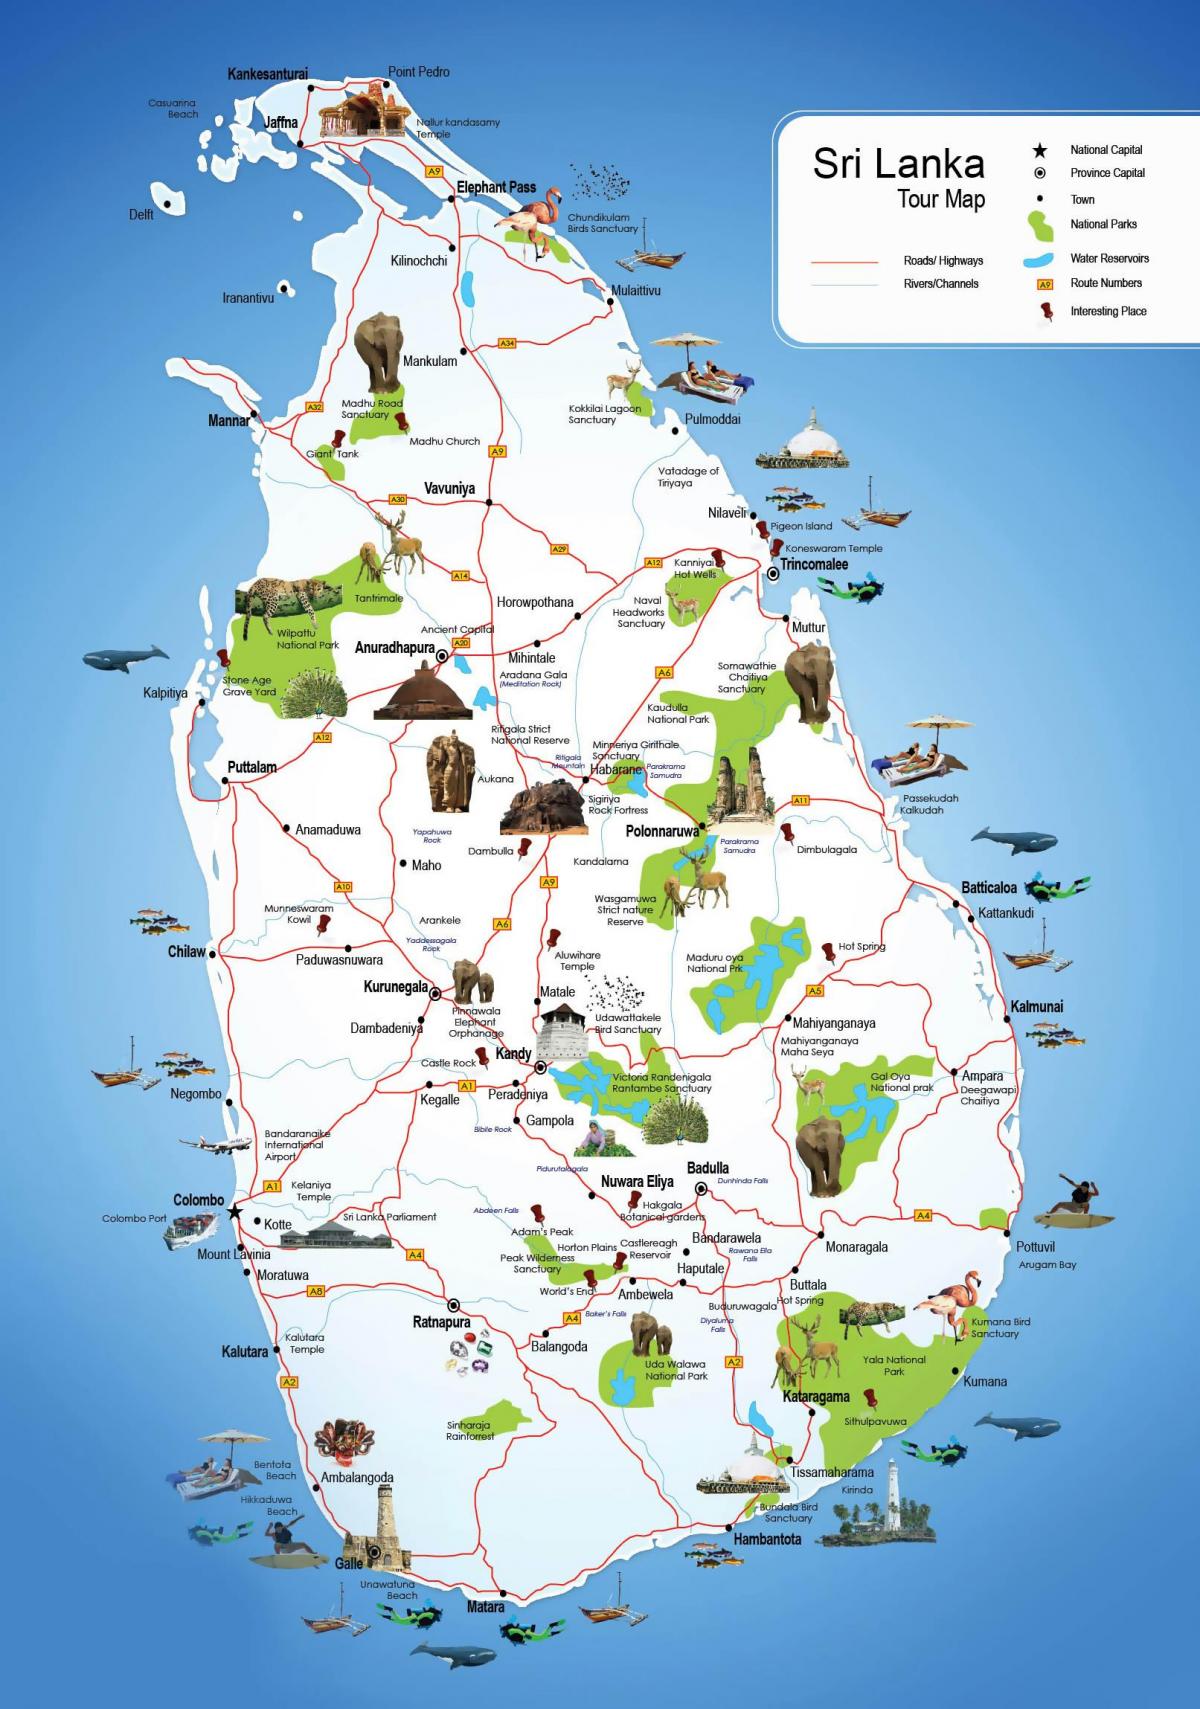 الأماكن السياحية في سريلانكا خريطة